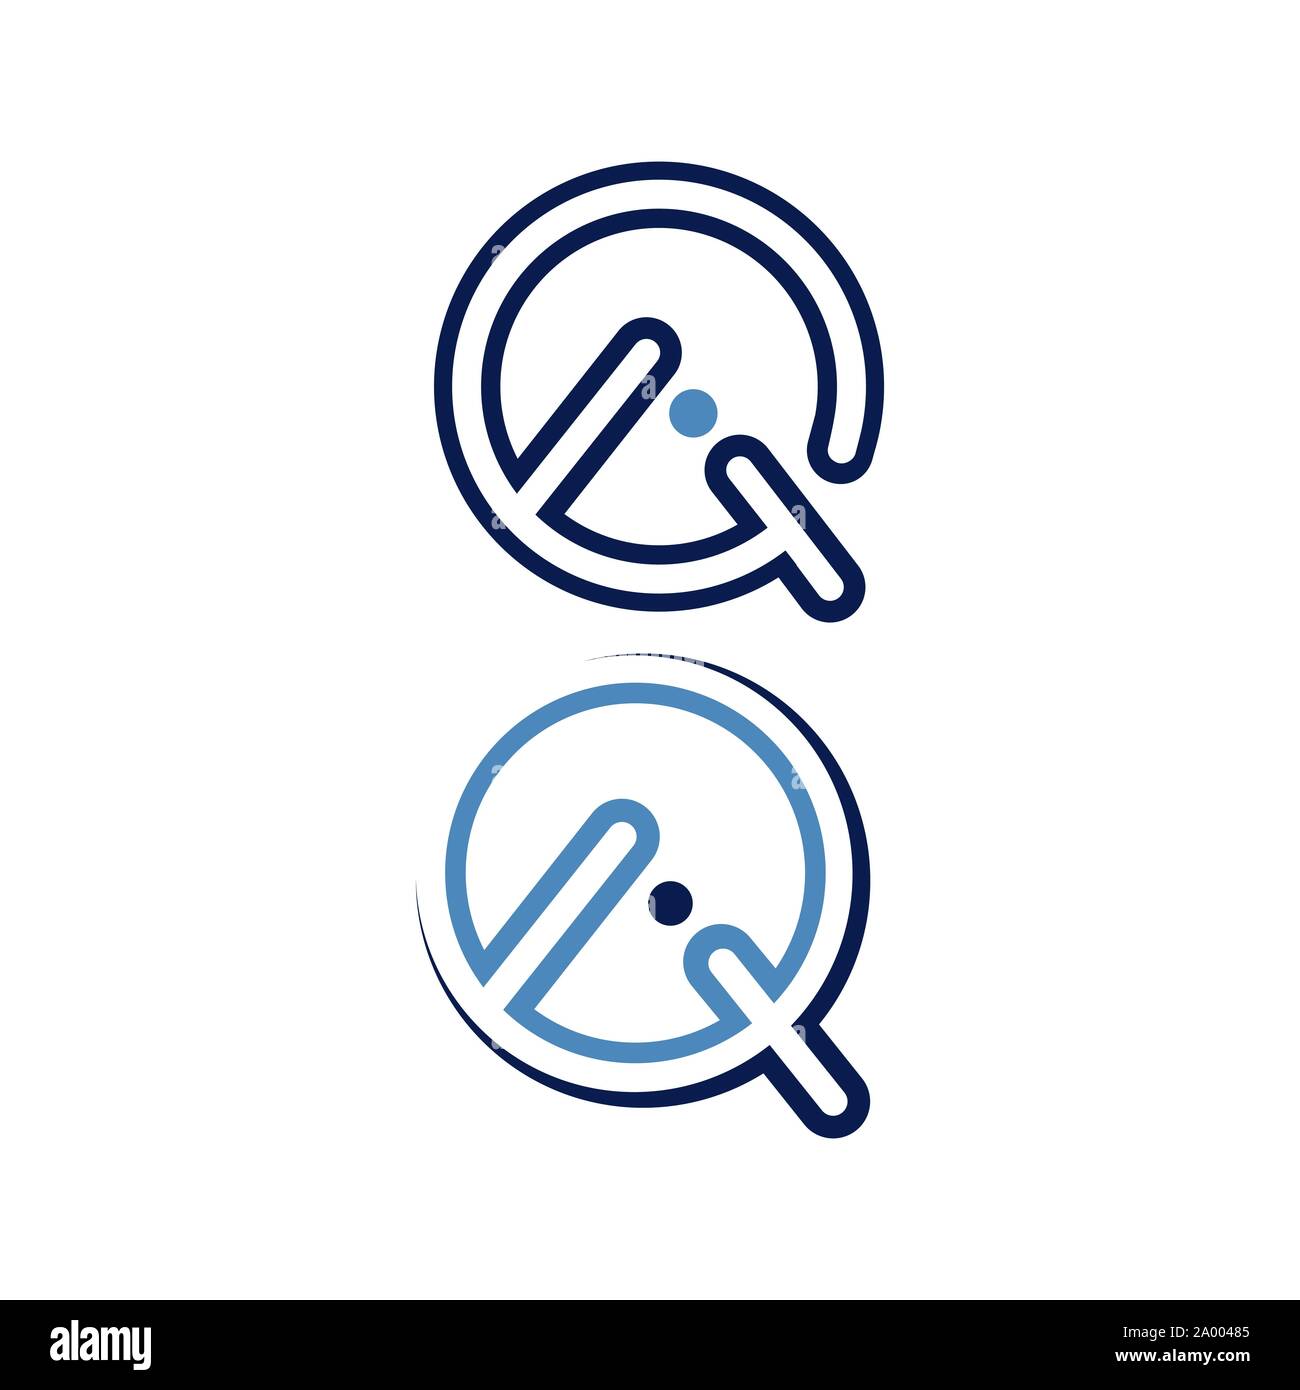 Creative Lettera Q logo design vector graphic concept Illustrazione Vettoriale